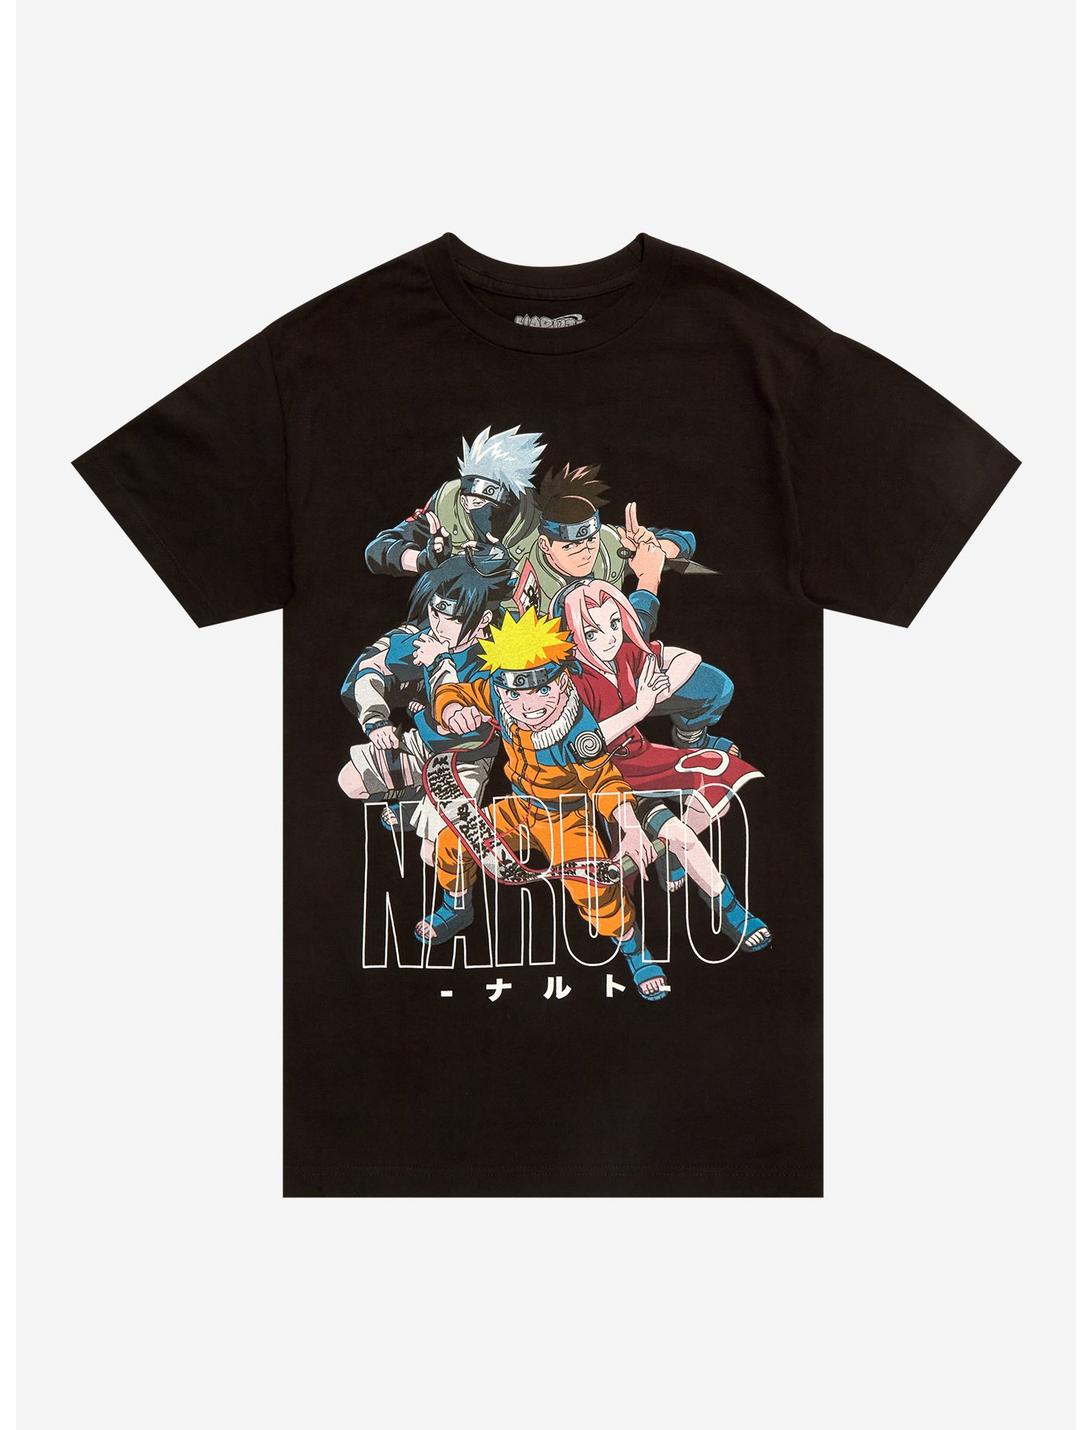 Naruto Team 7 & Iruka T-Shirt | Hot Topic